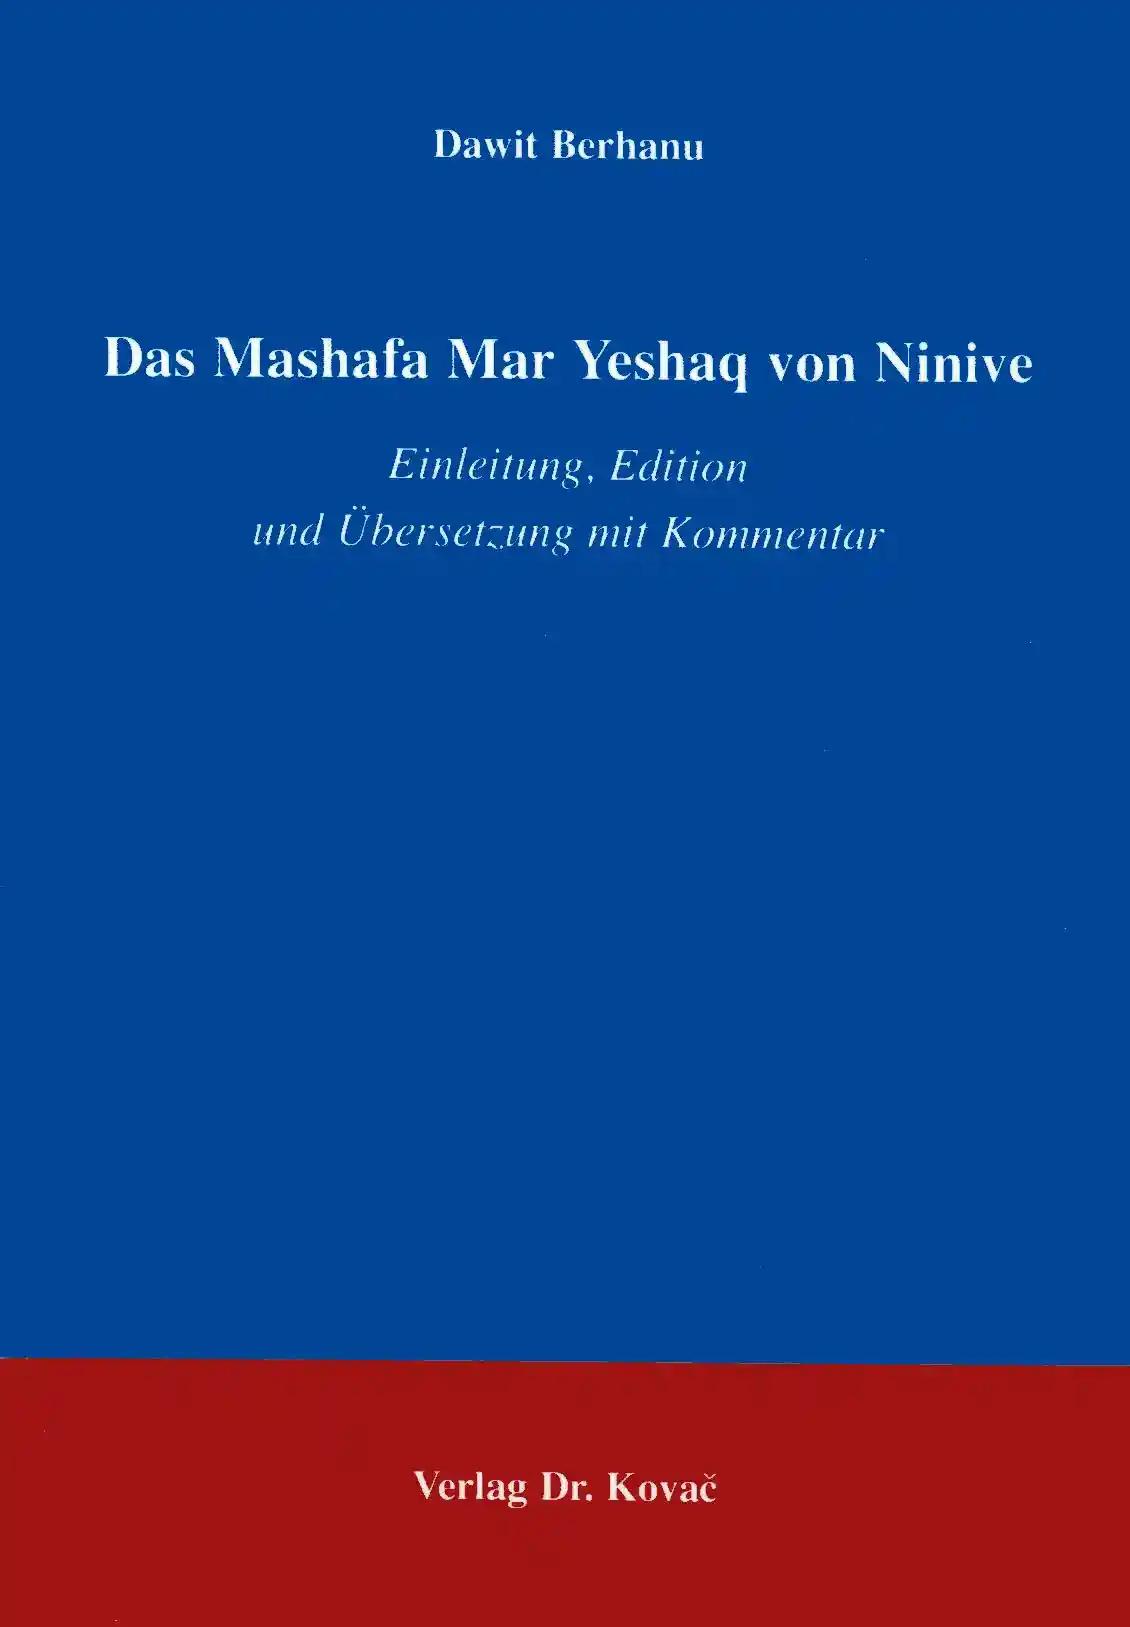 Das Mashafa Mar Yeshaq von Ninive, Einleitung, Edition und Übersetzung mit Kommentar - Dawit Berhanu